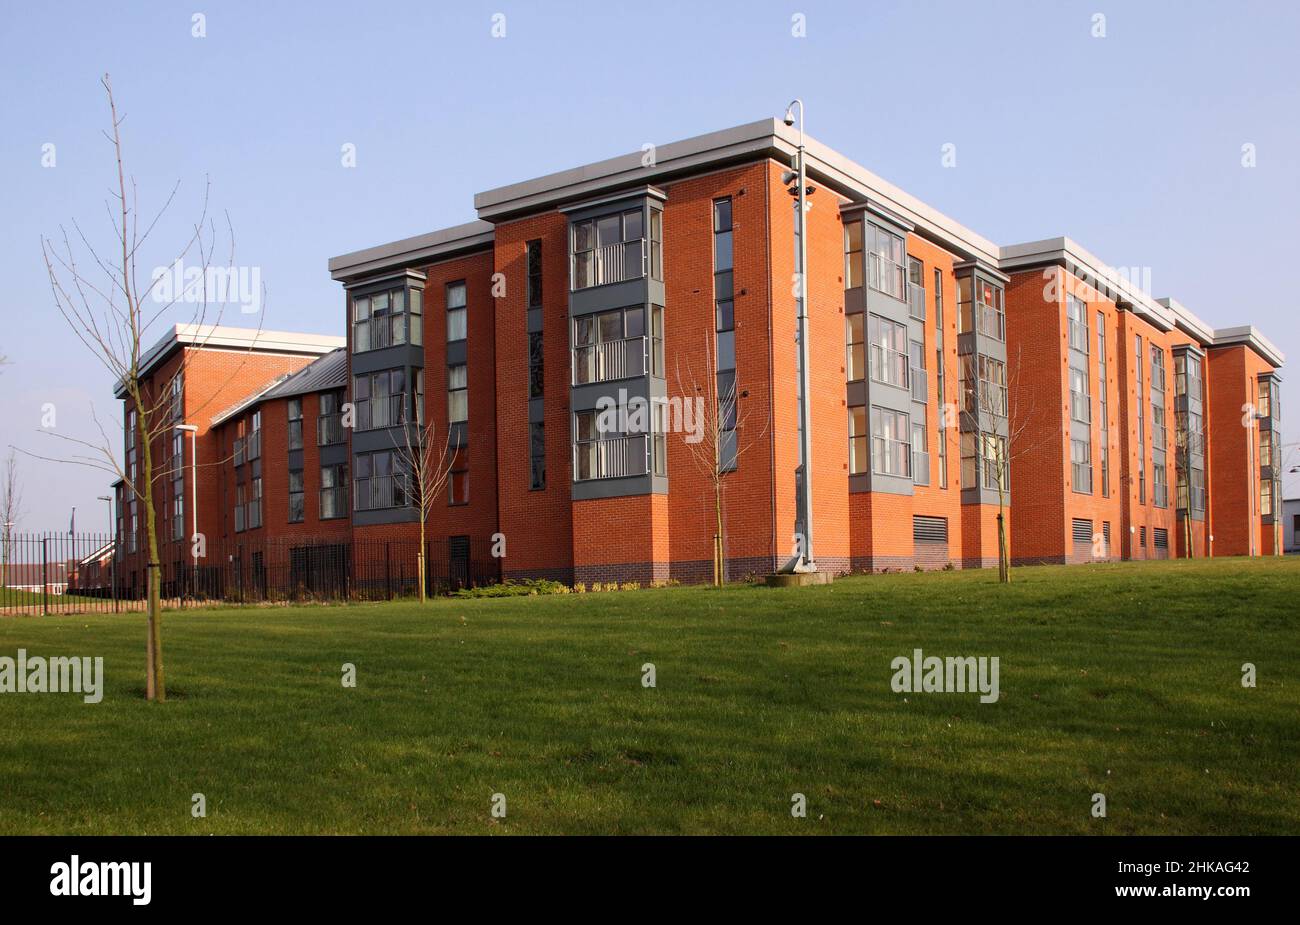 Immeuble moderne d'appartements à Wolverhampton, West Midlands, Angleterre, Royaume-Uni, ciel bleu Banque D'Images